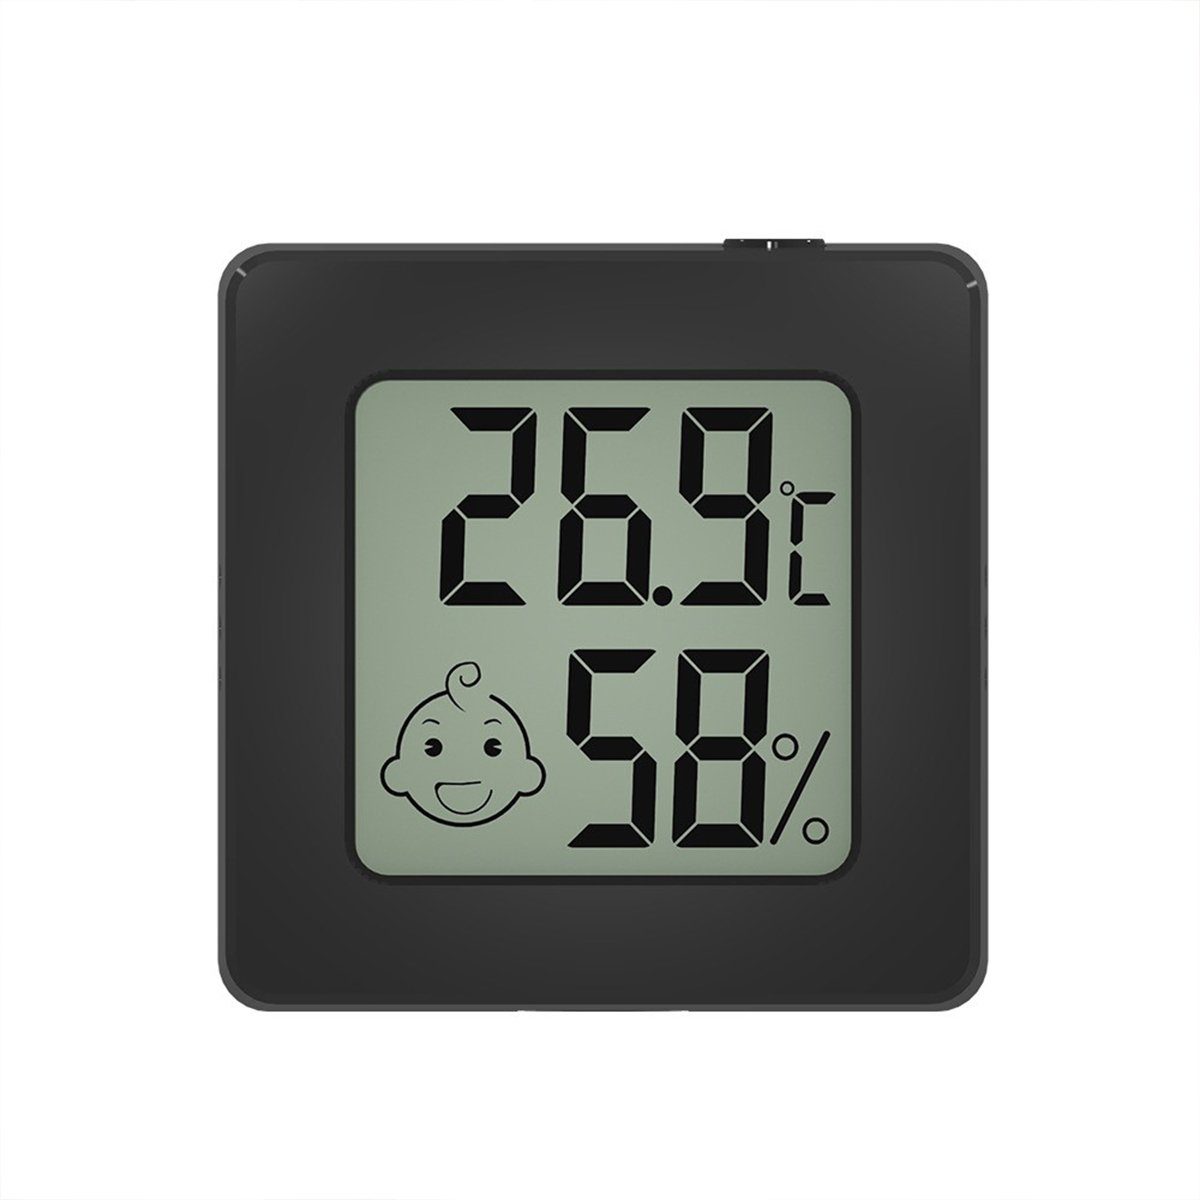 XDeer Raumthermometer Mini Thermometer Hygrometer Raumthermometer, Digital Innen Temperatur Monitor für Innenraum Babyraum Schwarz